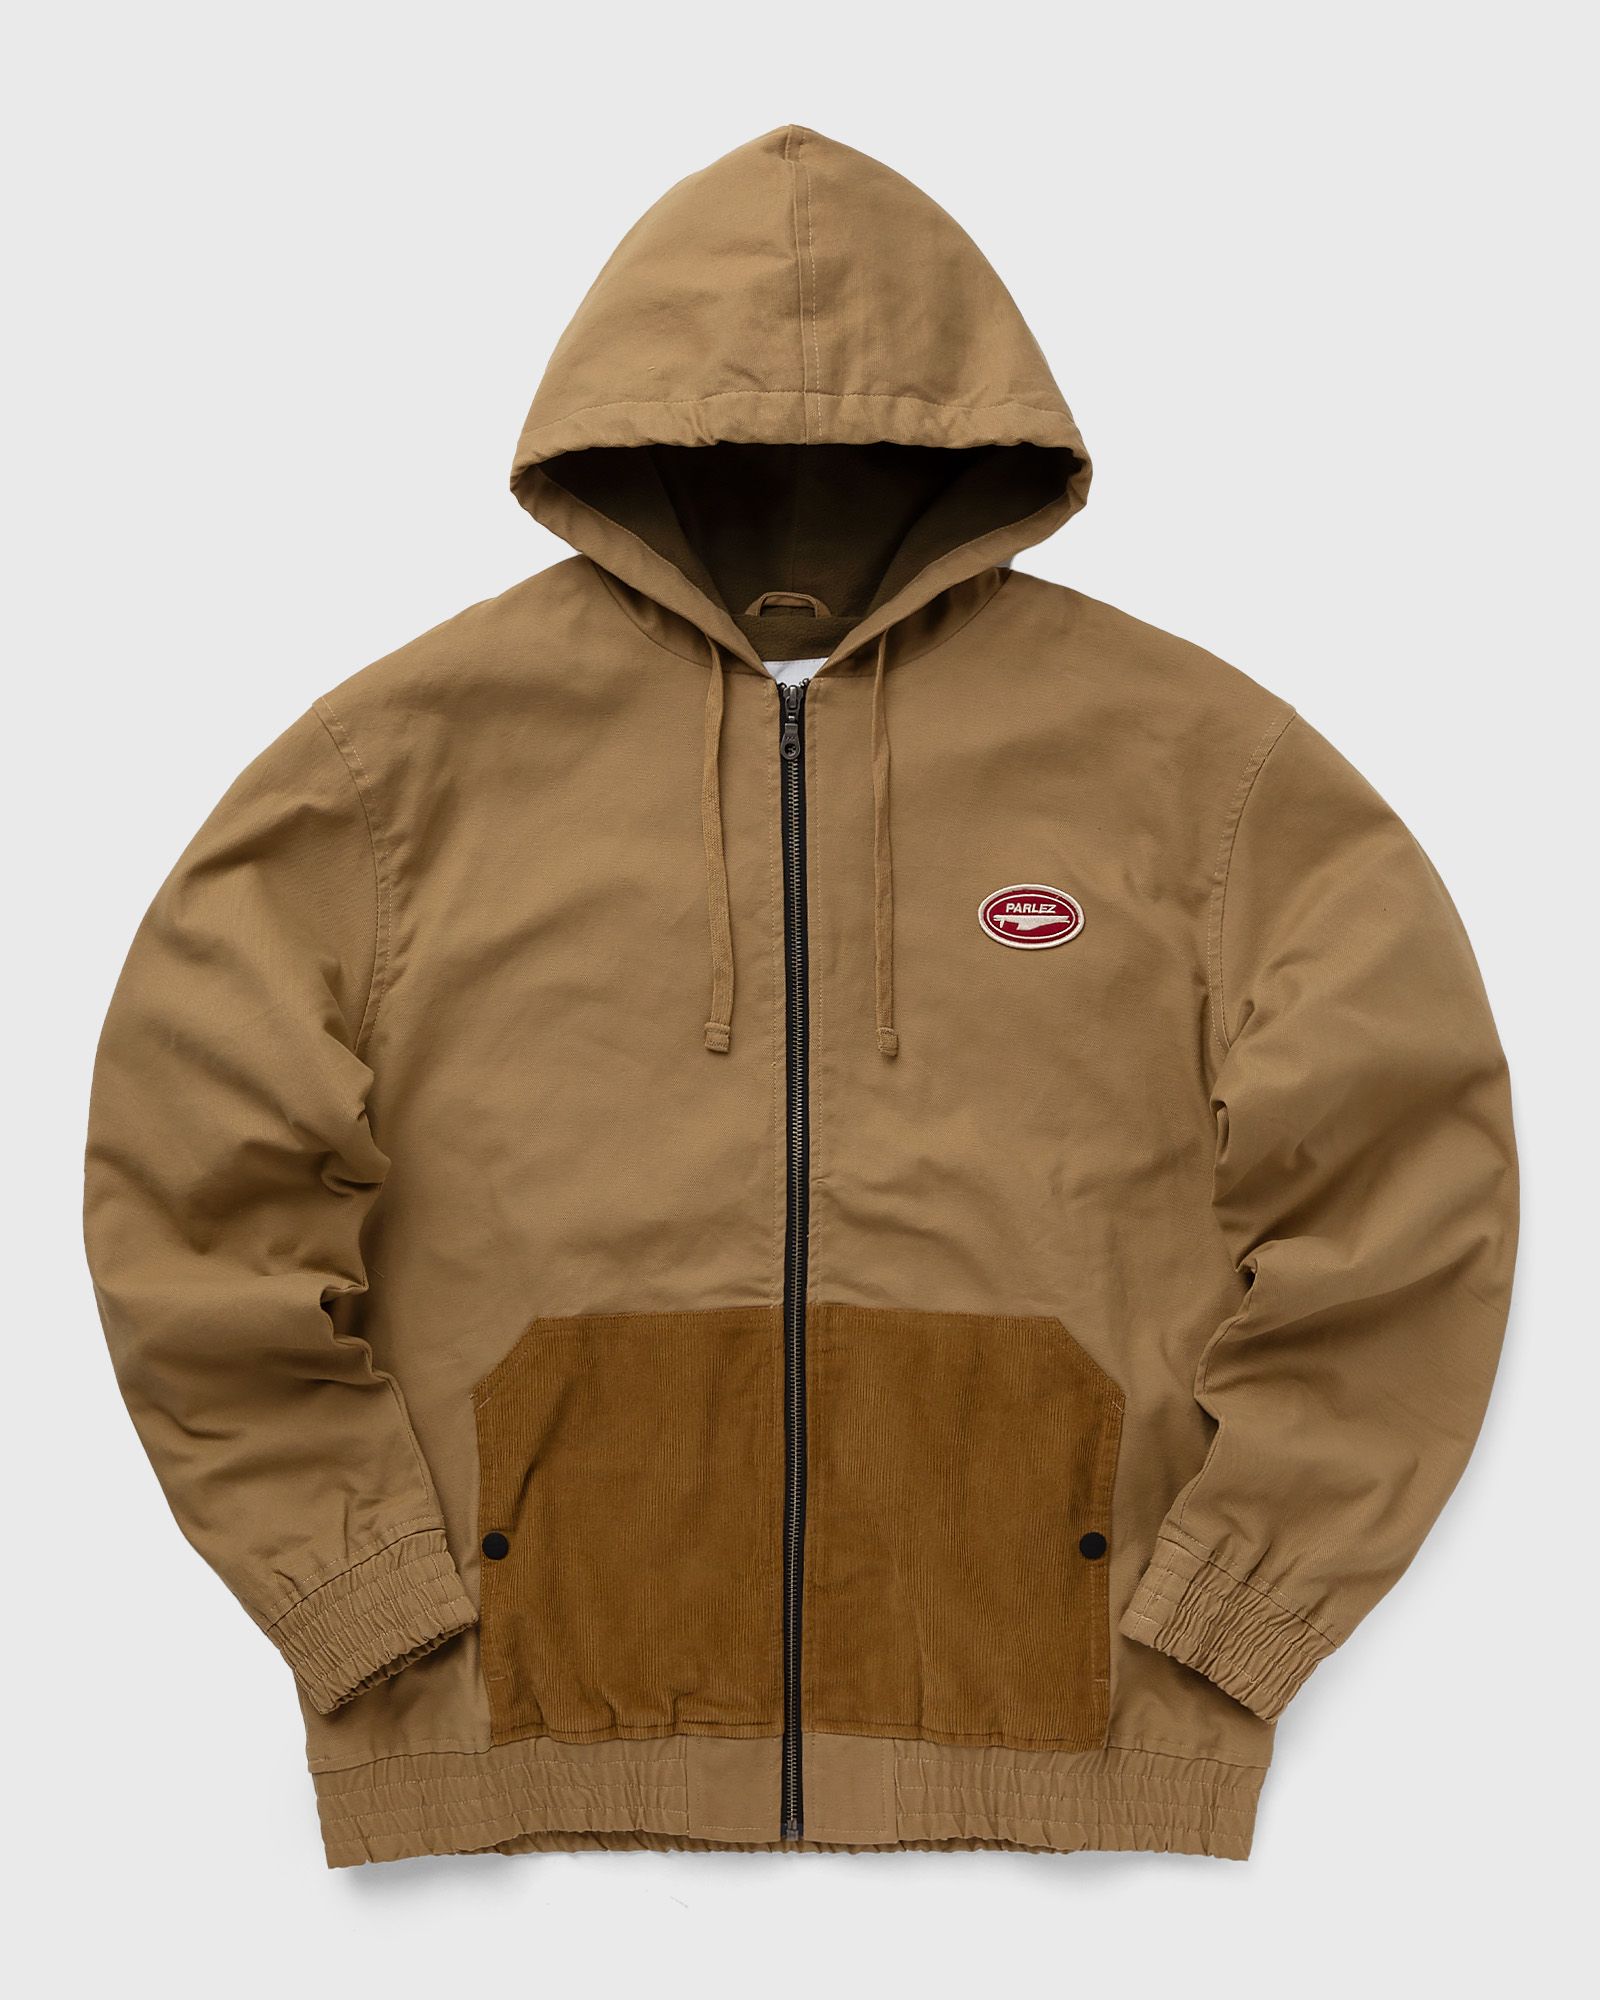 Parlez - fasten hood jacket men windbreaker brown in größe:xl